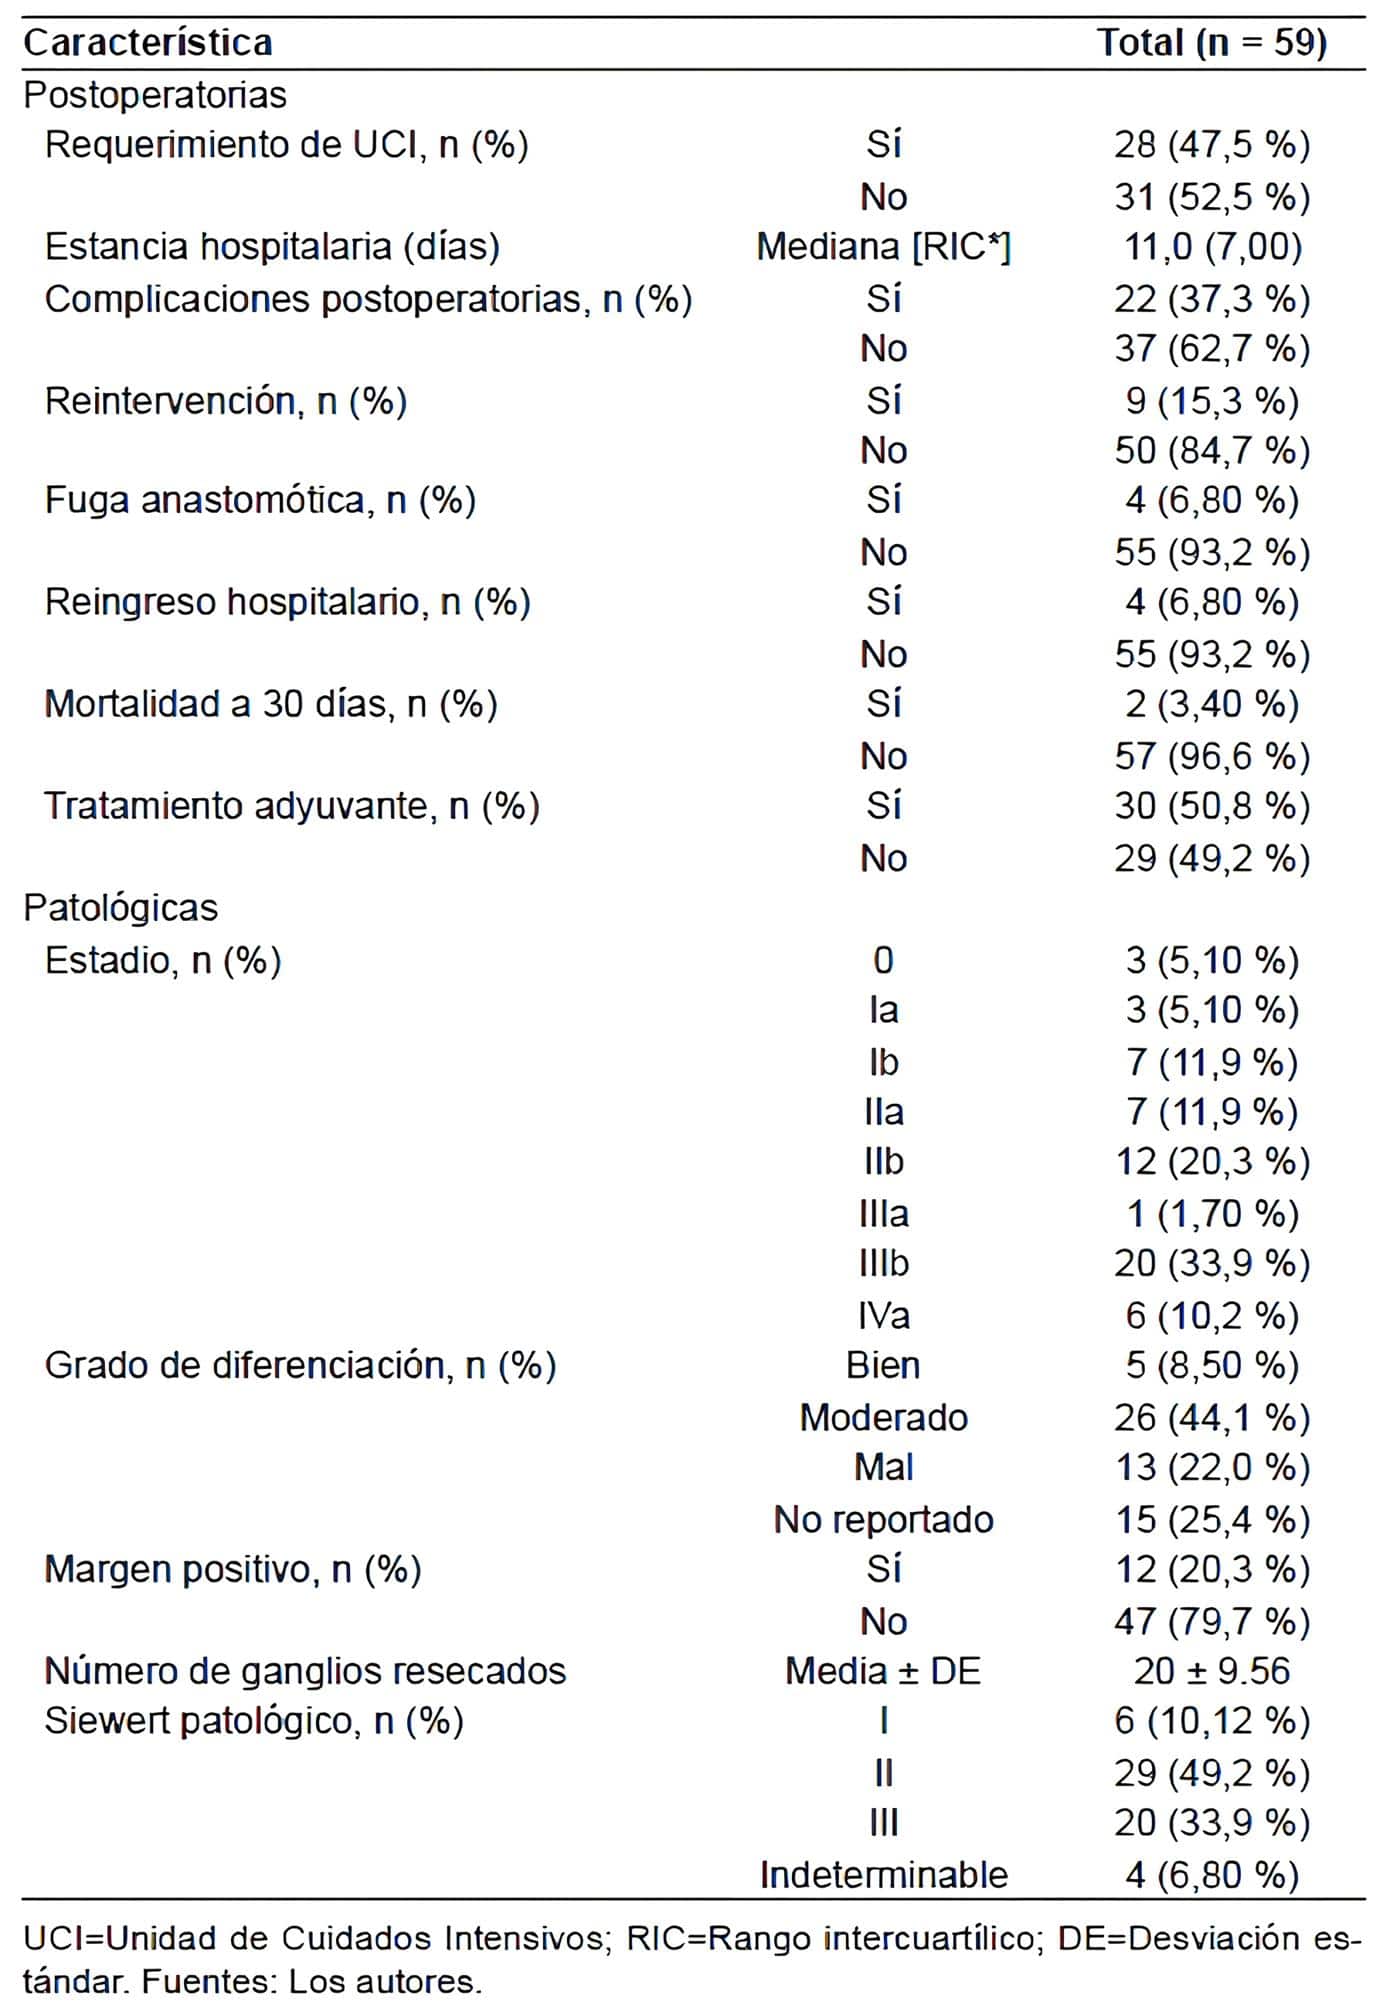 Características postoperatorias y patológicas de los pacientes
con tumores de la unión esófago gástrica